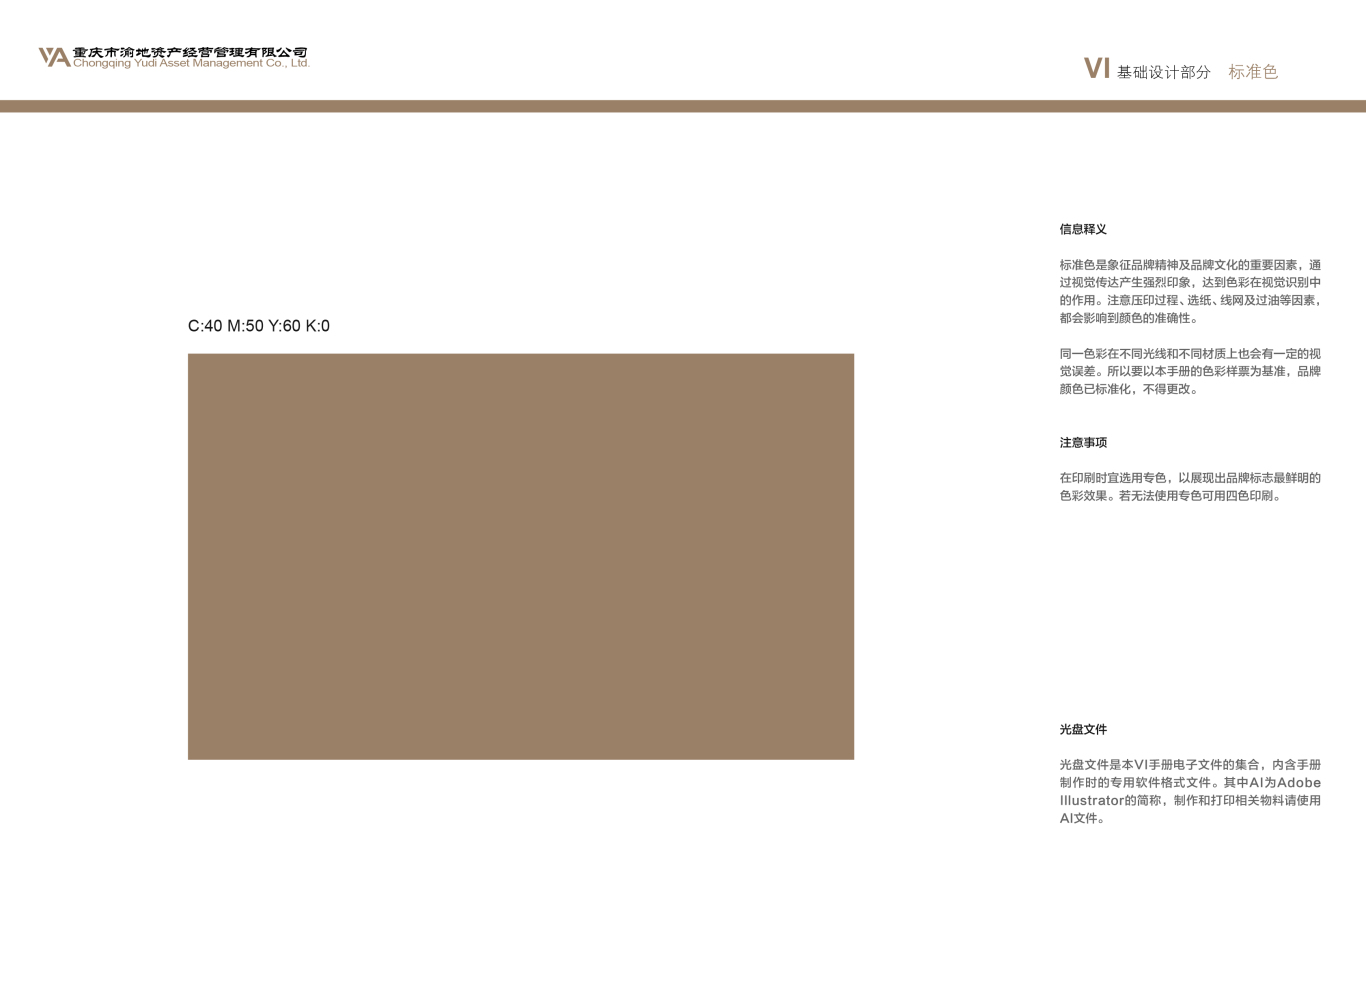 重庆市渝地资产经营管理有限公司vi设计图9